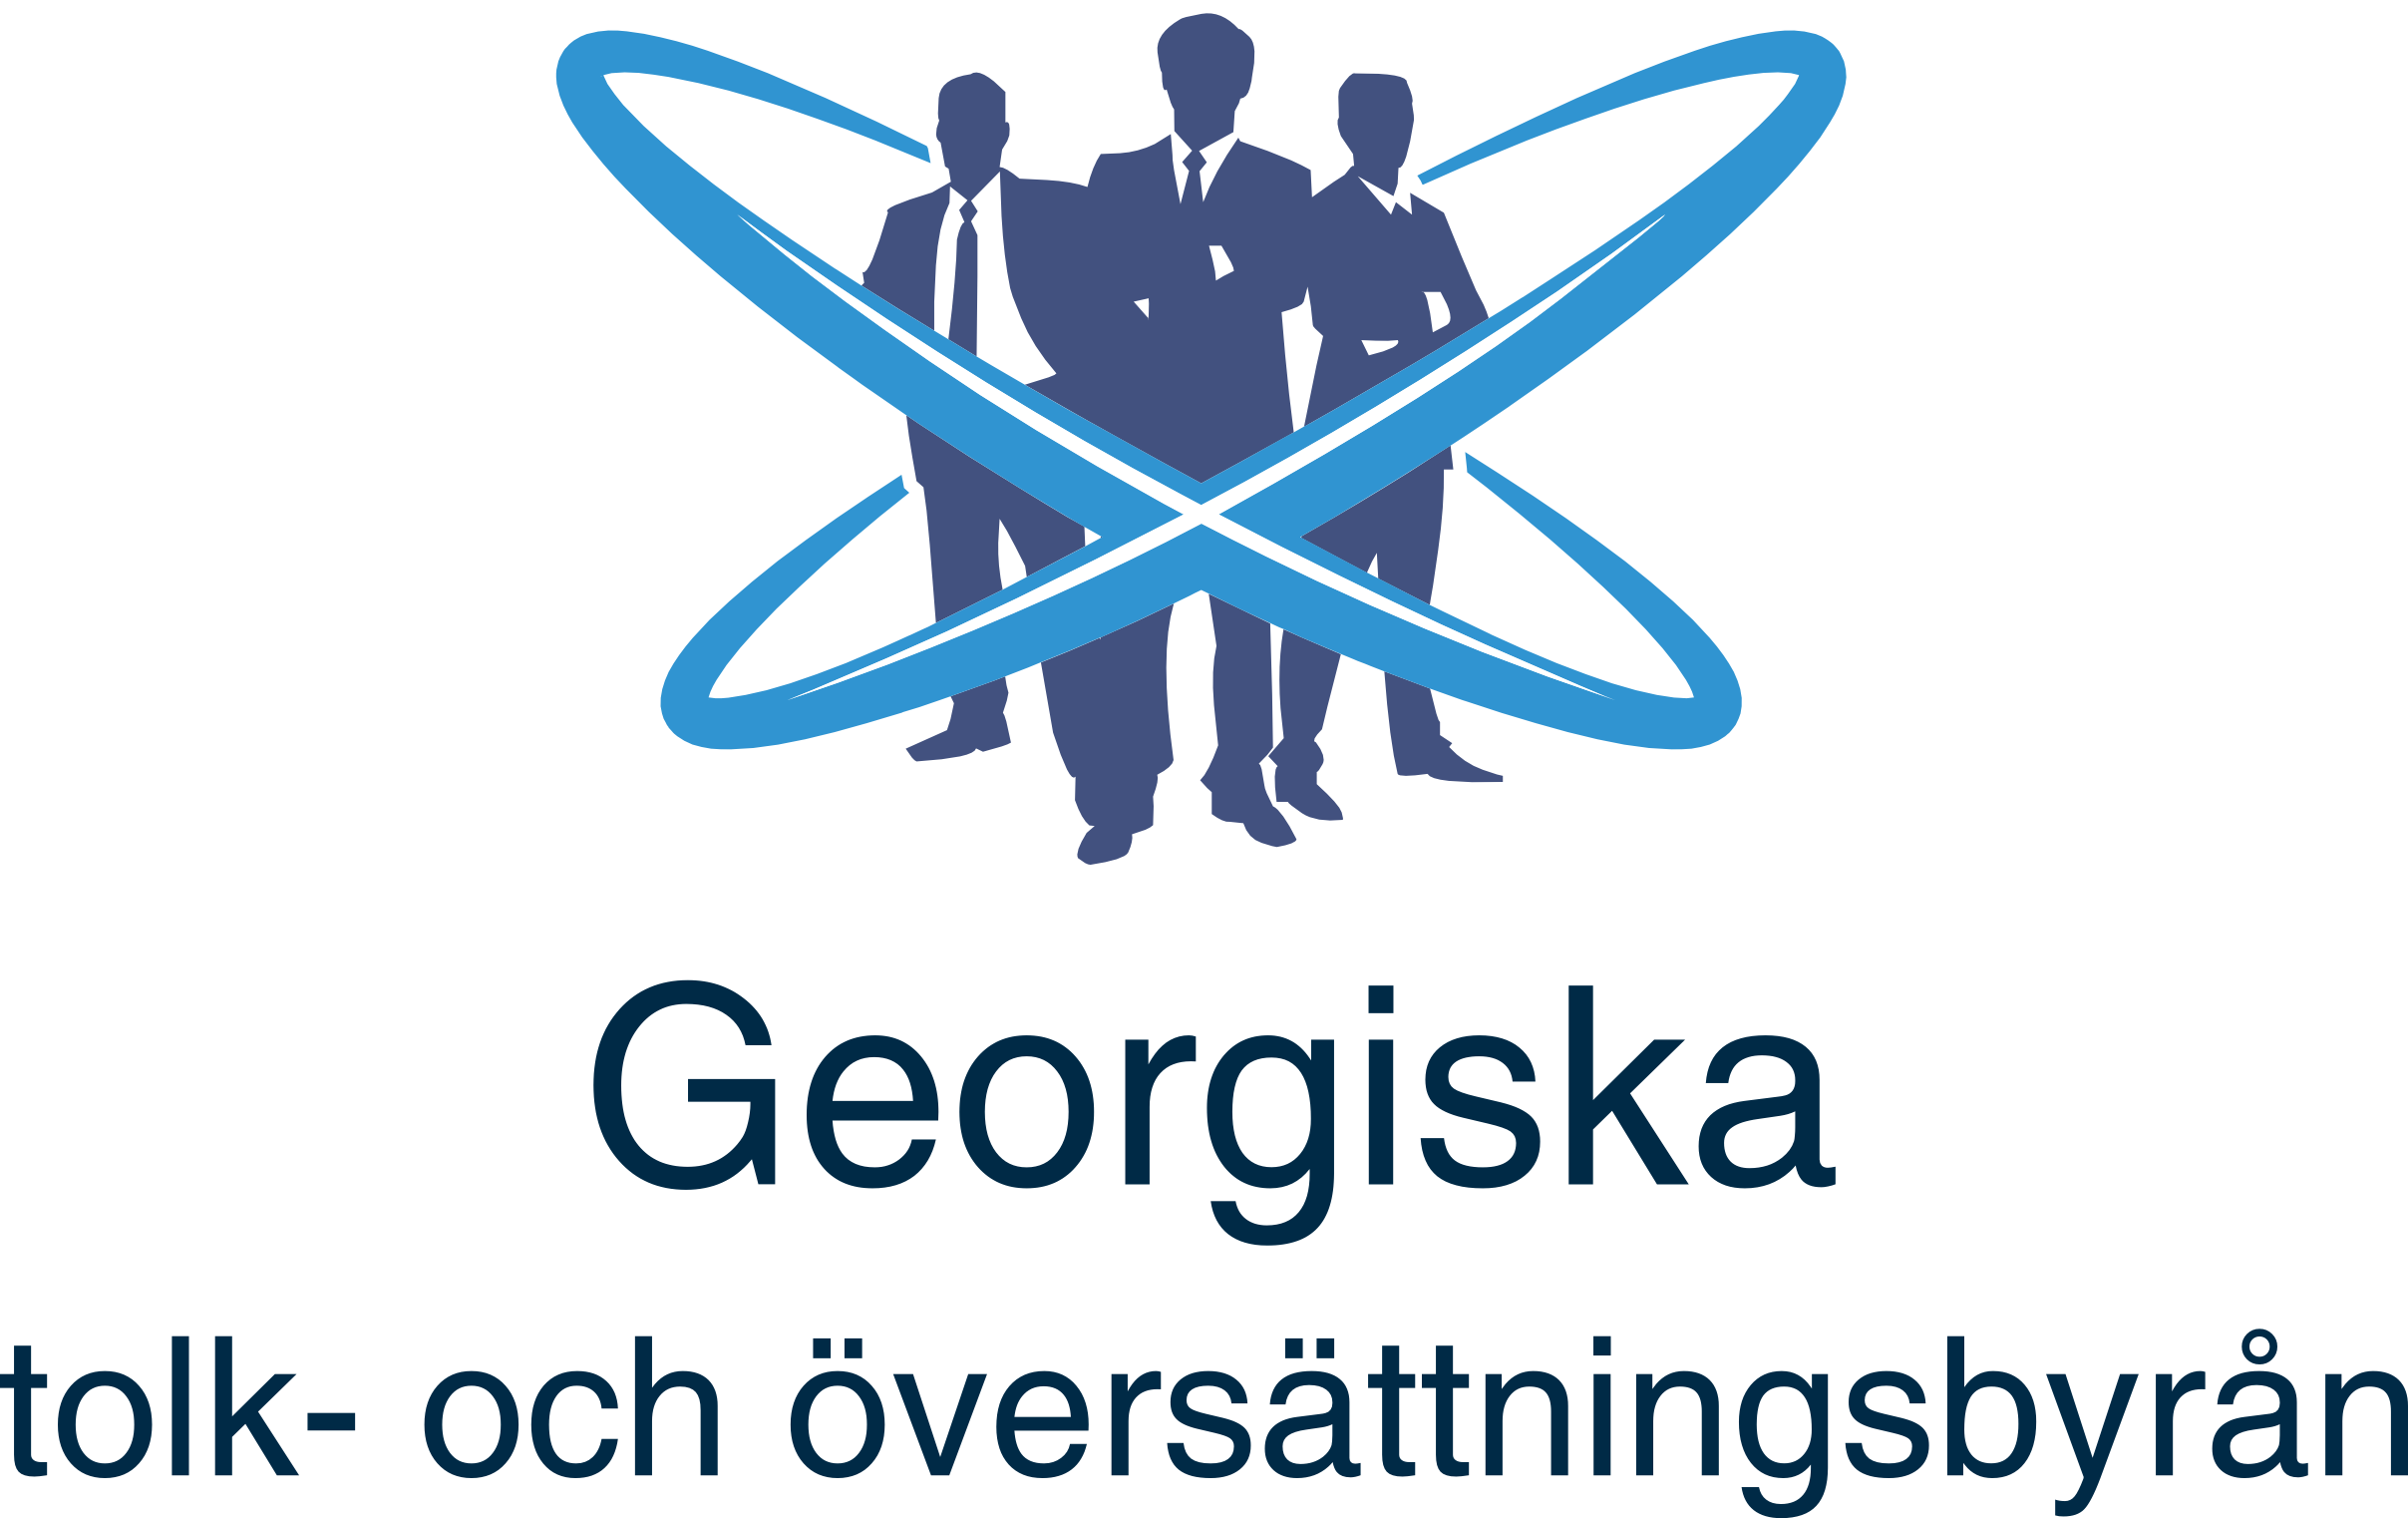 Georgiska tolk- och översättningsbyrån